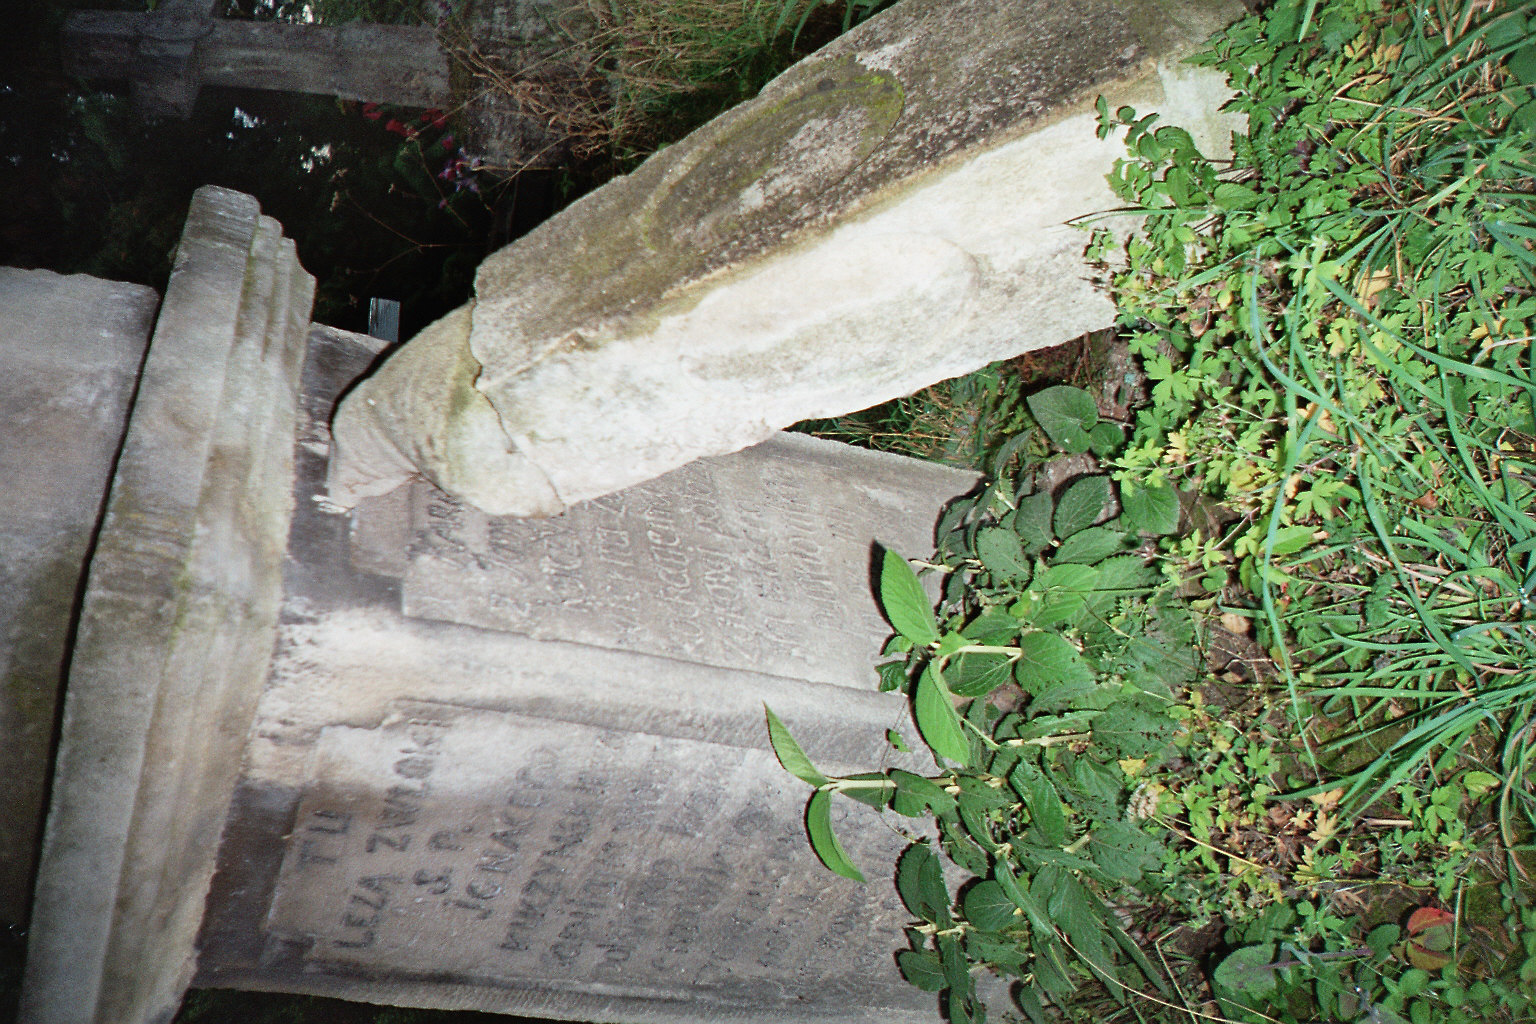 Tombstone of Ignacy Kuczynski, Zaleszczyki cemetery, as of 2005.